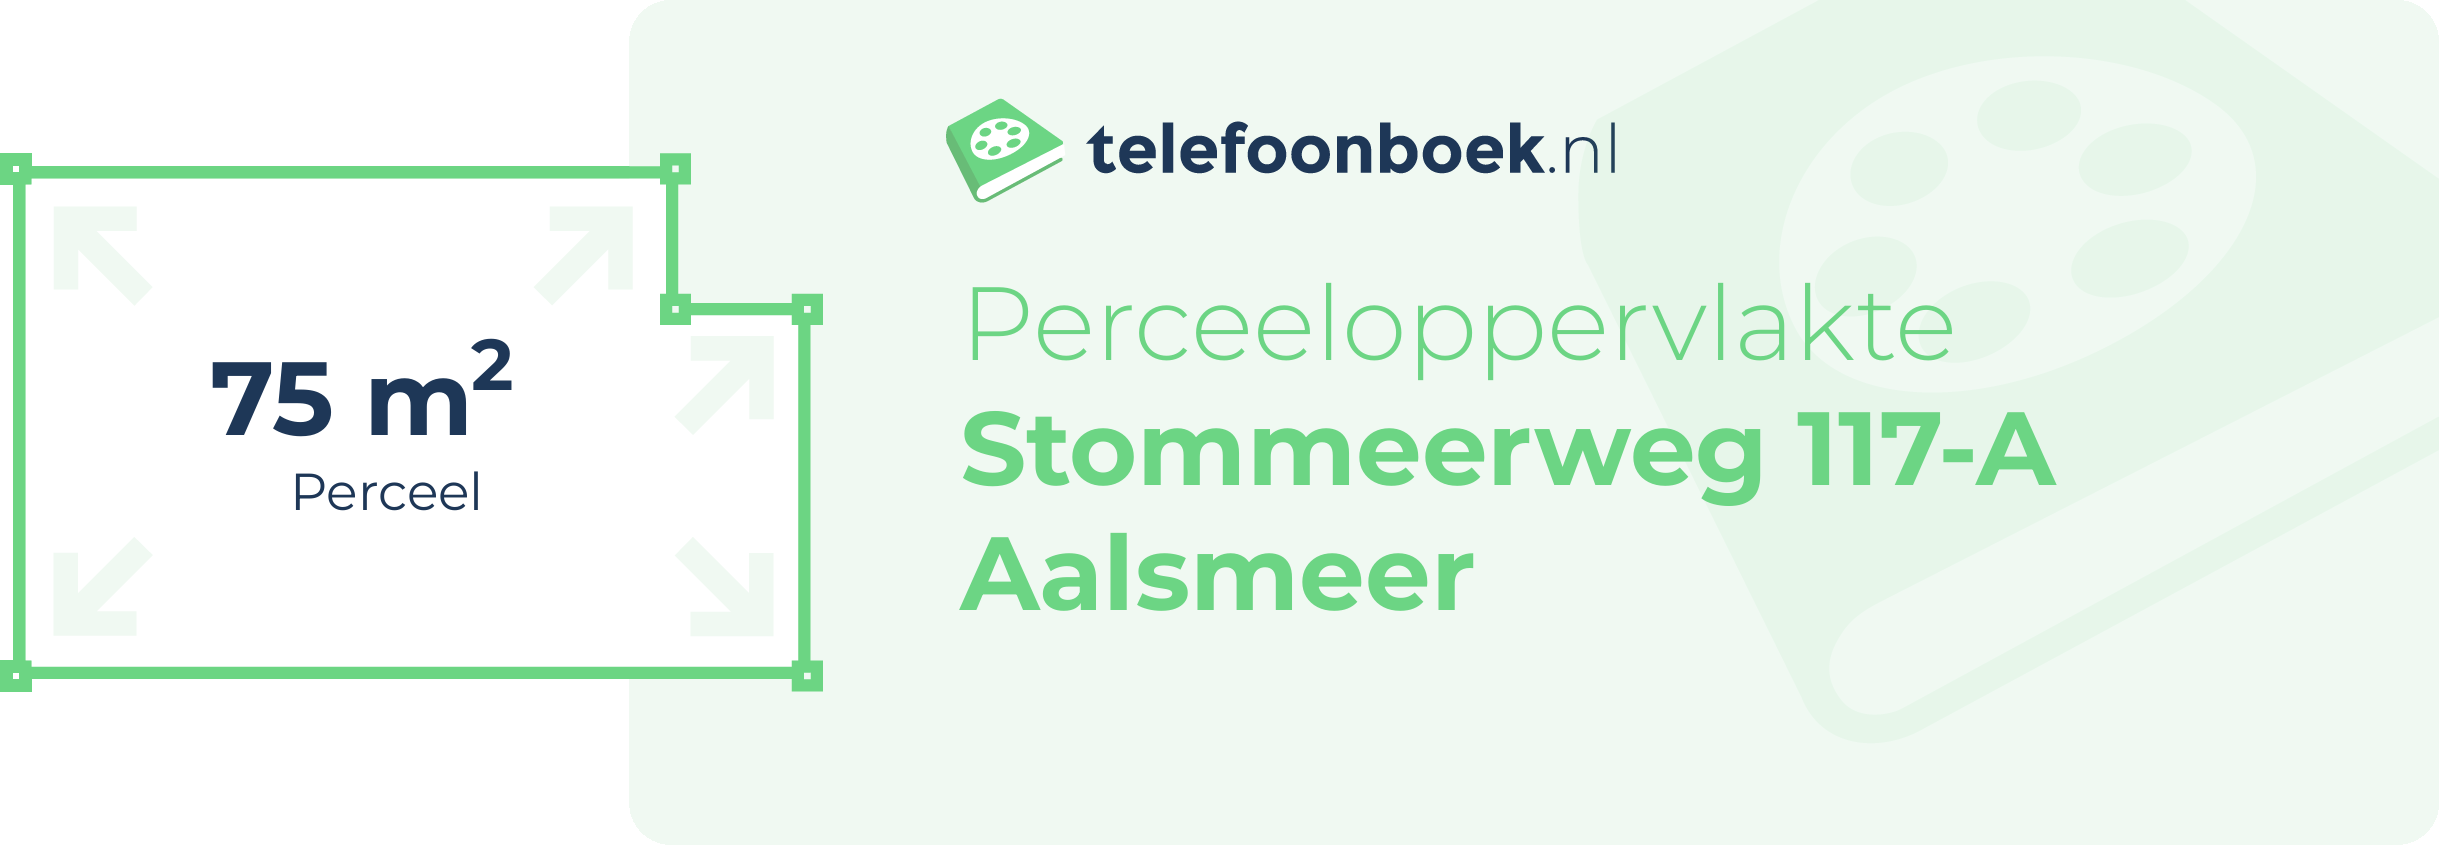 Perceeloppervlakte Stommeerweg 117-A Aalsmeer